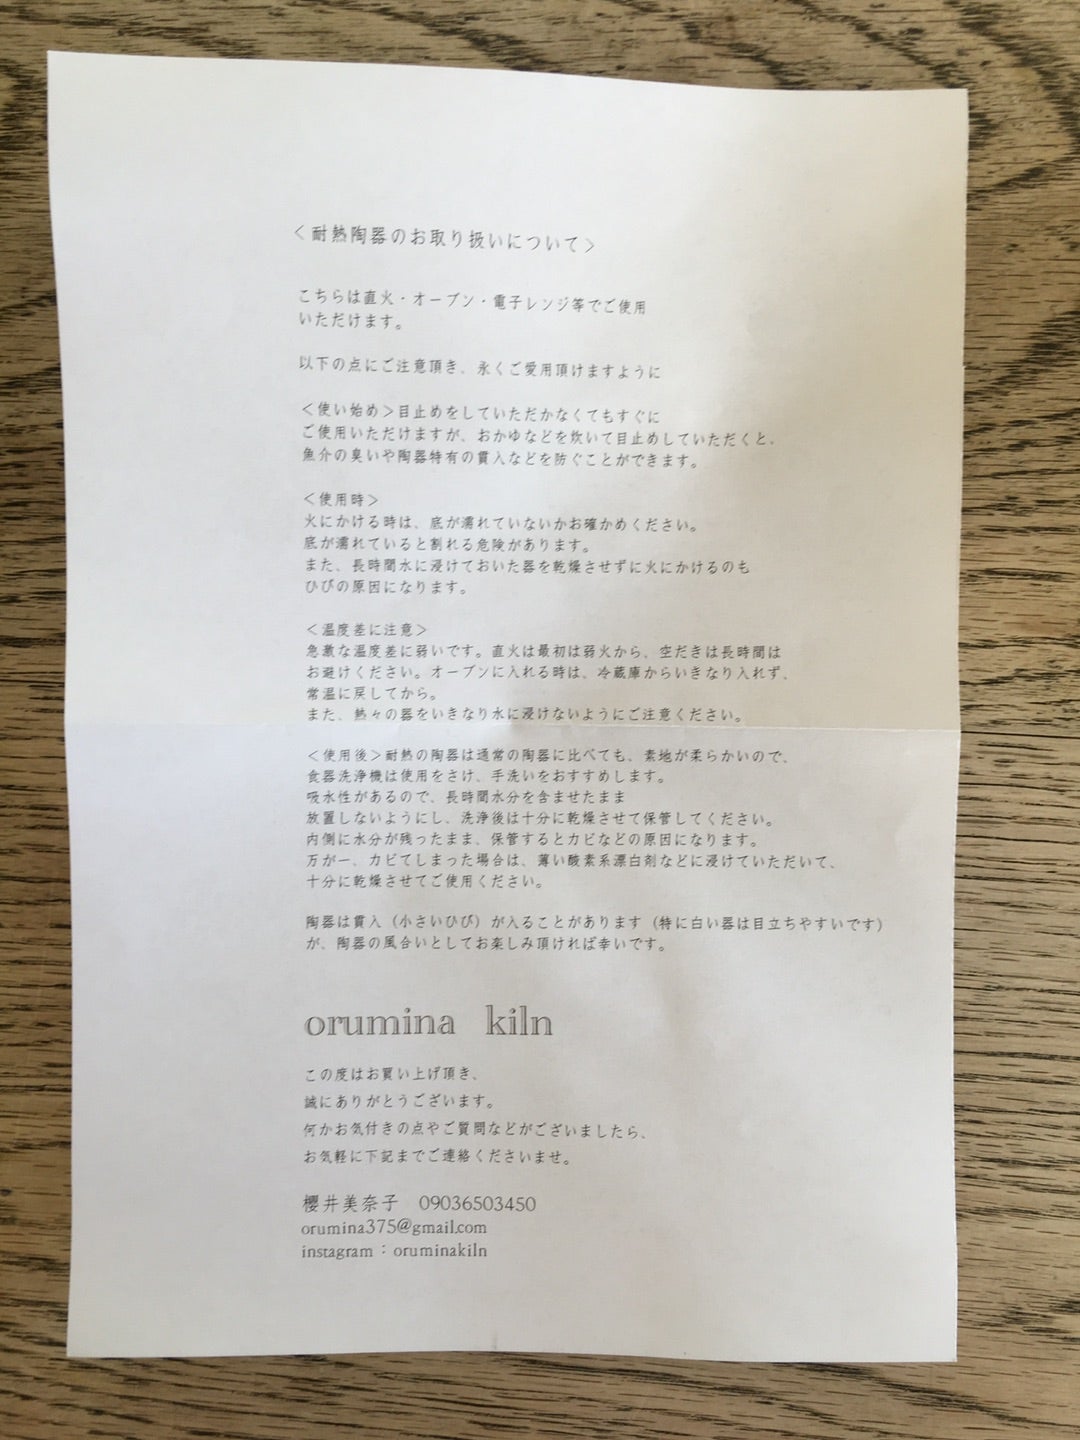 orumina kiln 櫻井美奈子 蓋付き ゴブレット 作家もの csm.fi.cr